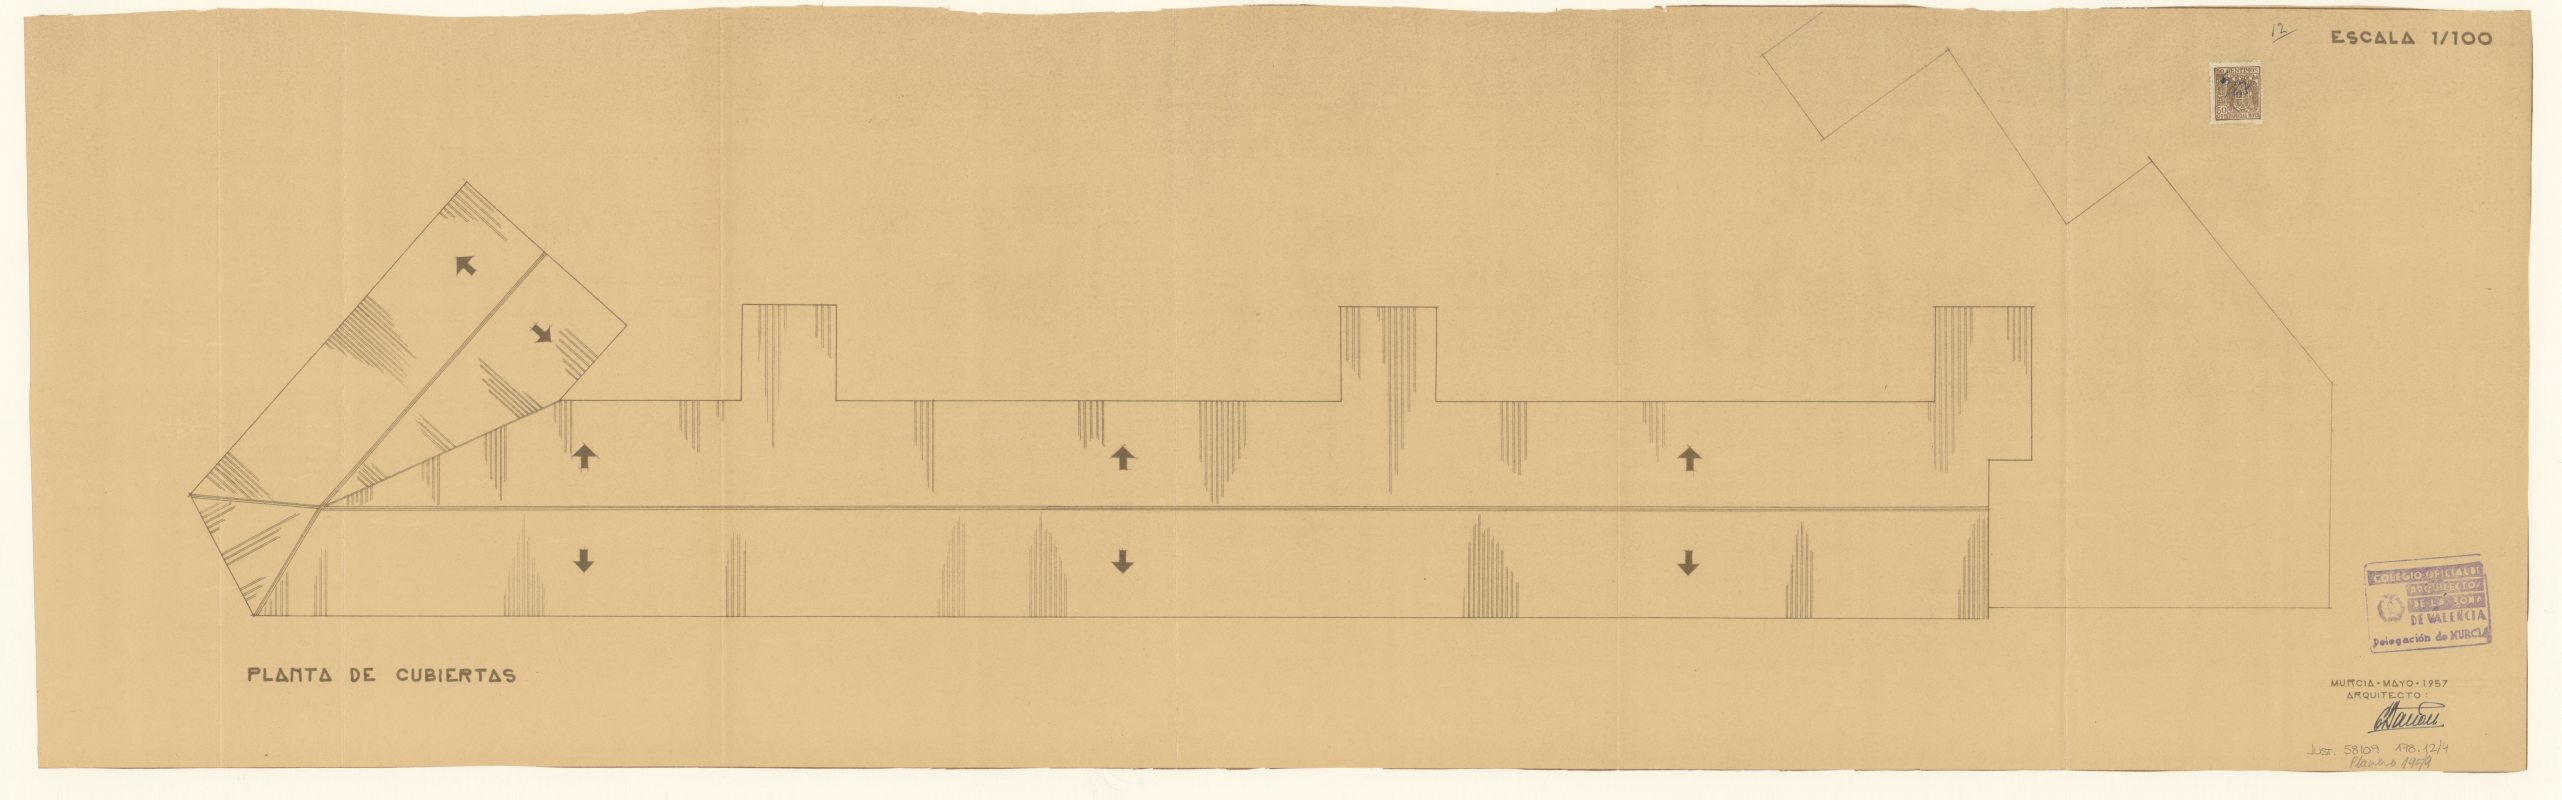 Plano de planta de cubiertas de edificio de viviendas de Gran Vía en Caravaca de la Cruz. Arquitecto Eugenio Bañón. Escala 1:100. Año 1957.